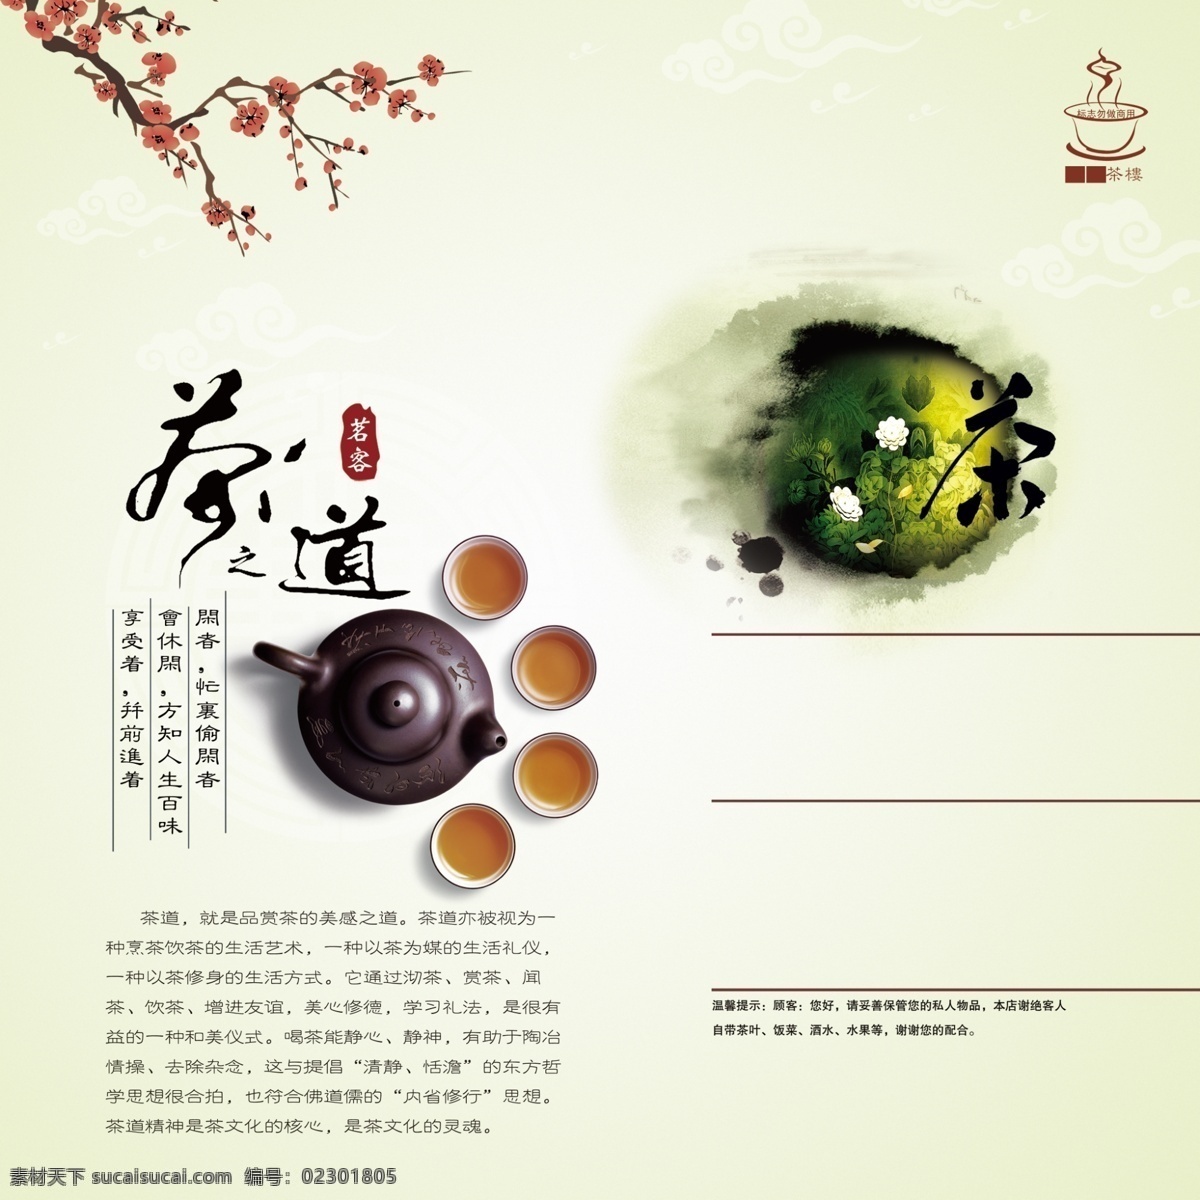 茶文化 茶道 咖啡 菜单 茶单 画册设计 广告设计模板 源文件